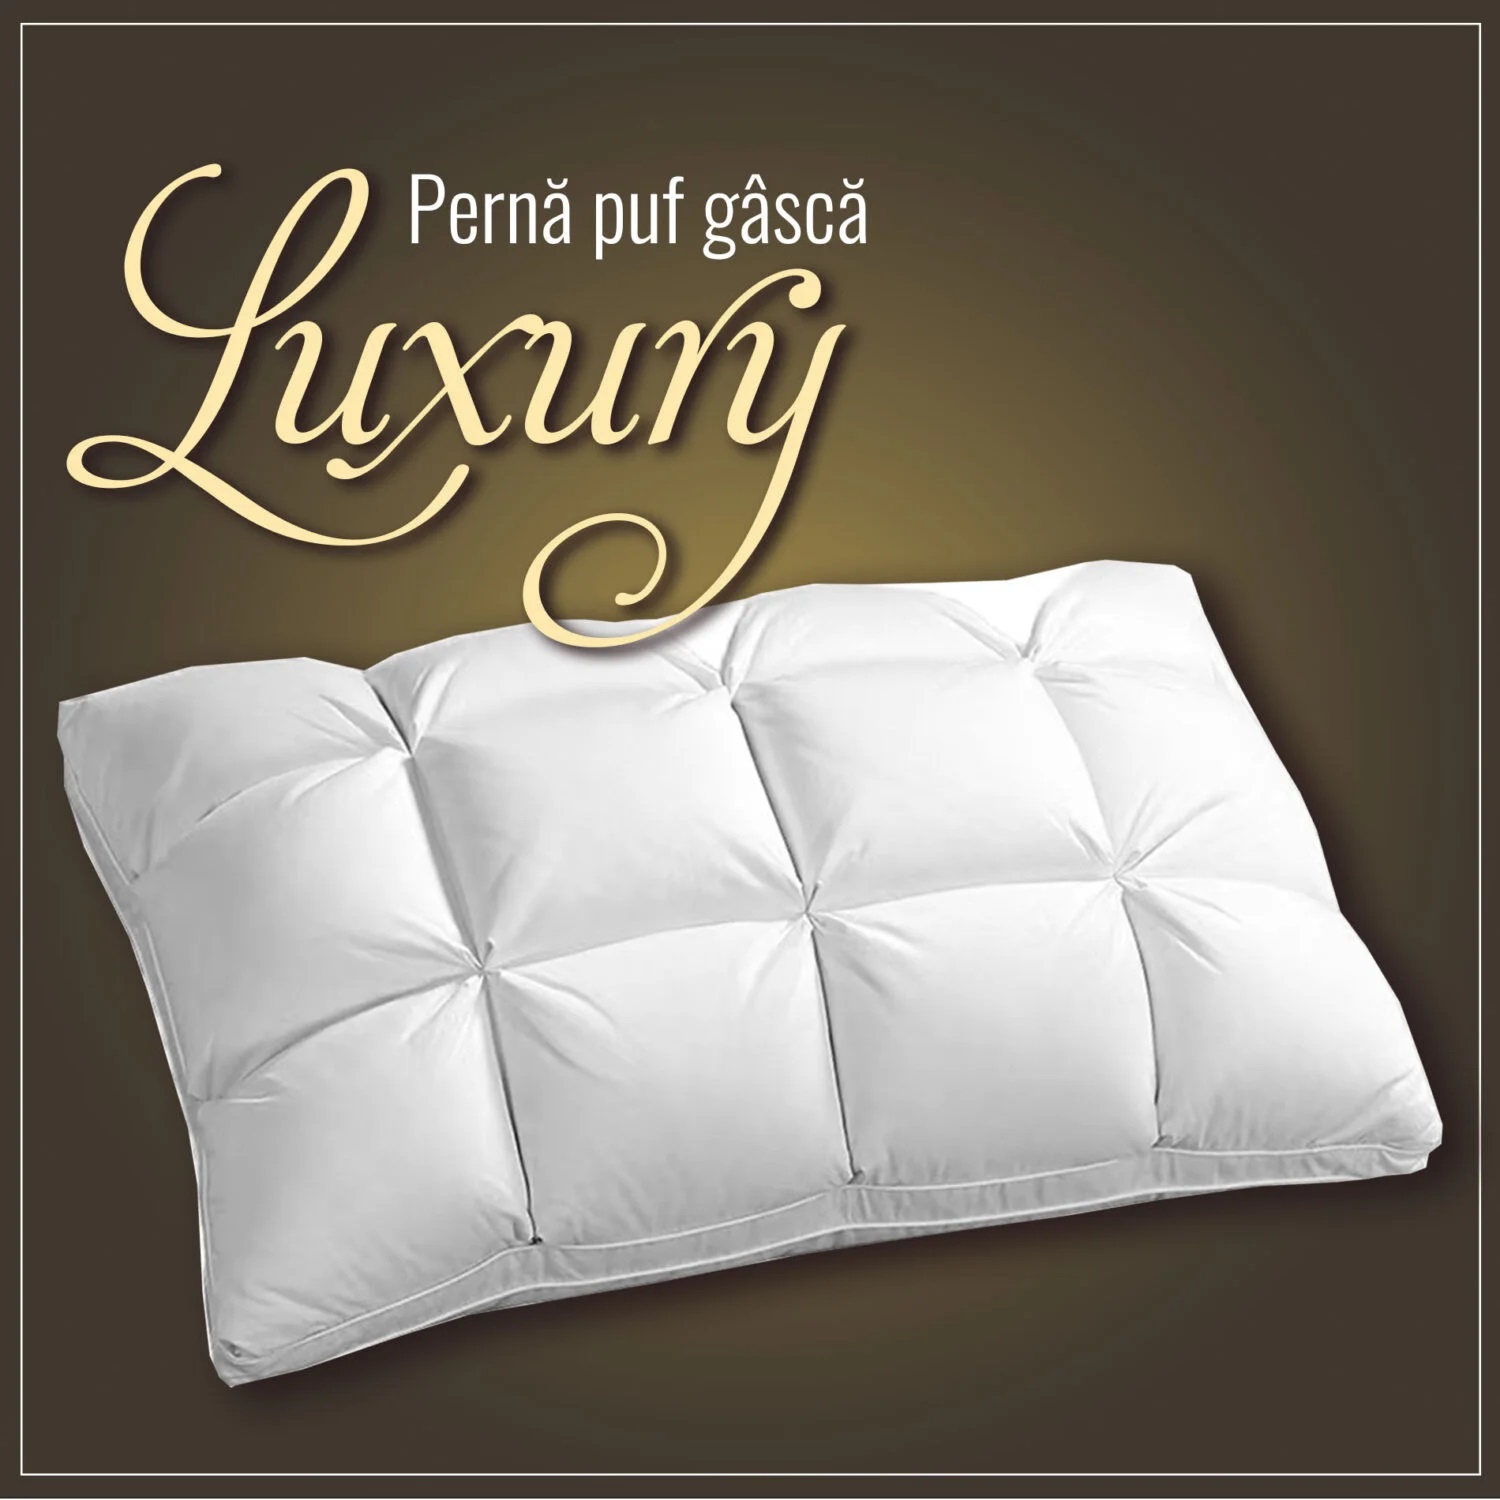 Perna-puf-gasca-Luxury-1500×1500